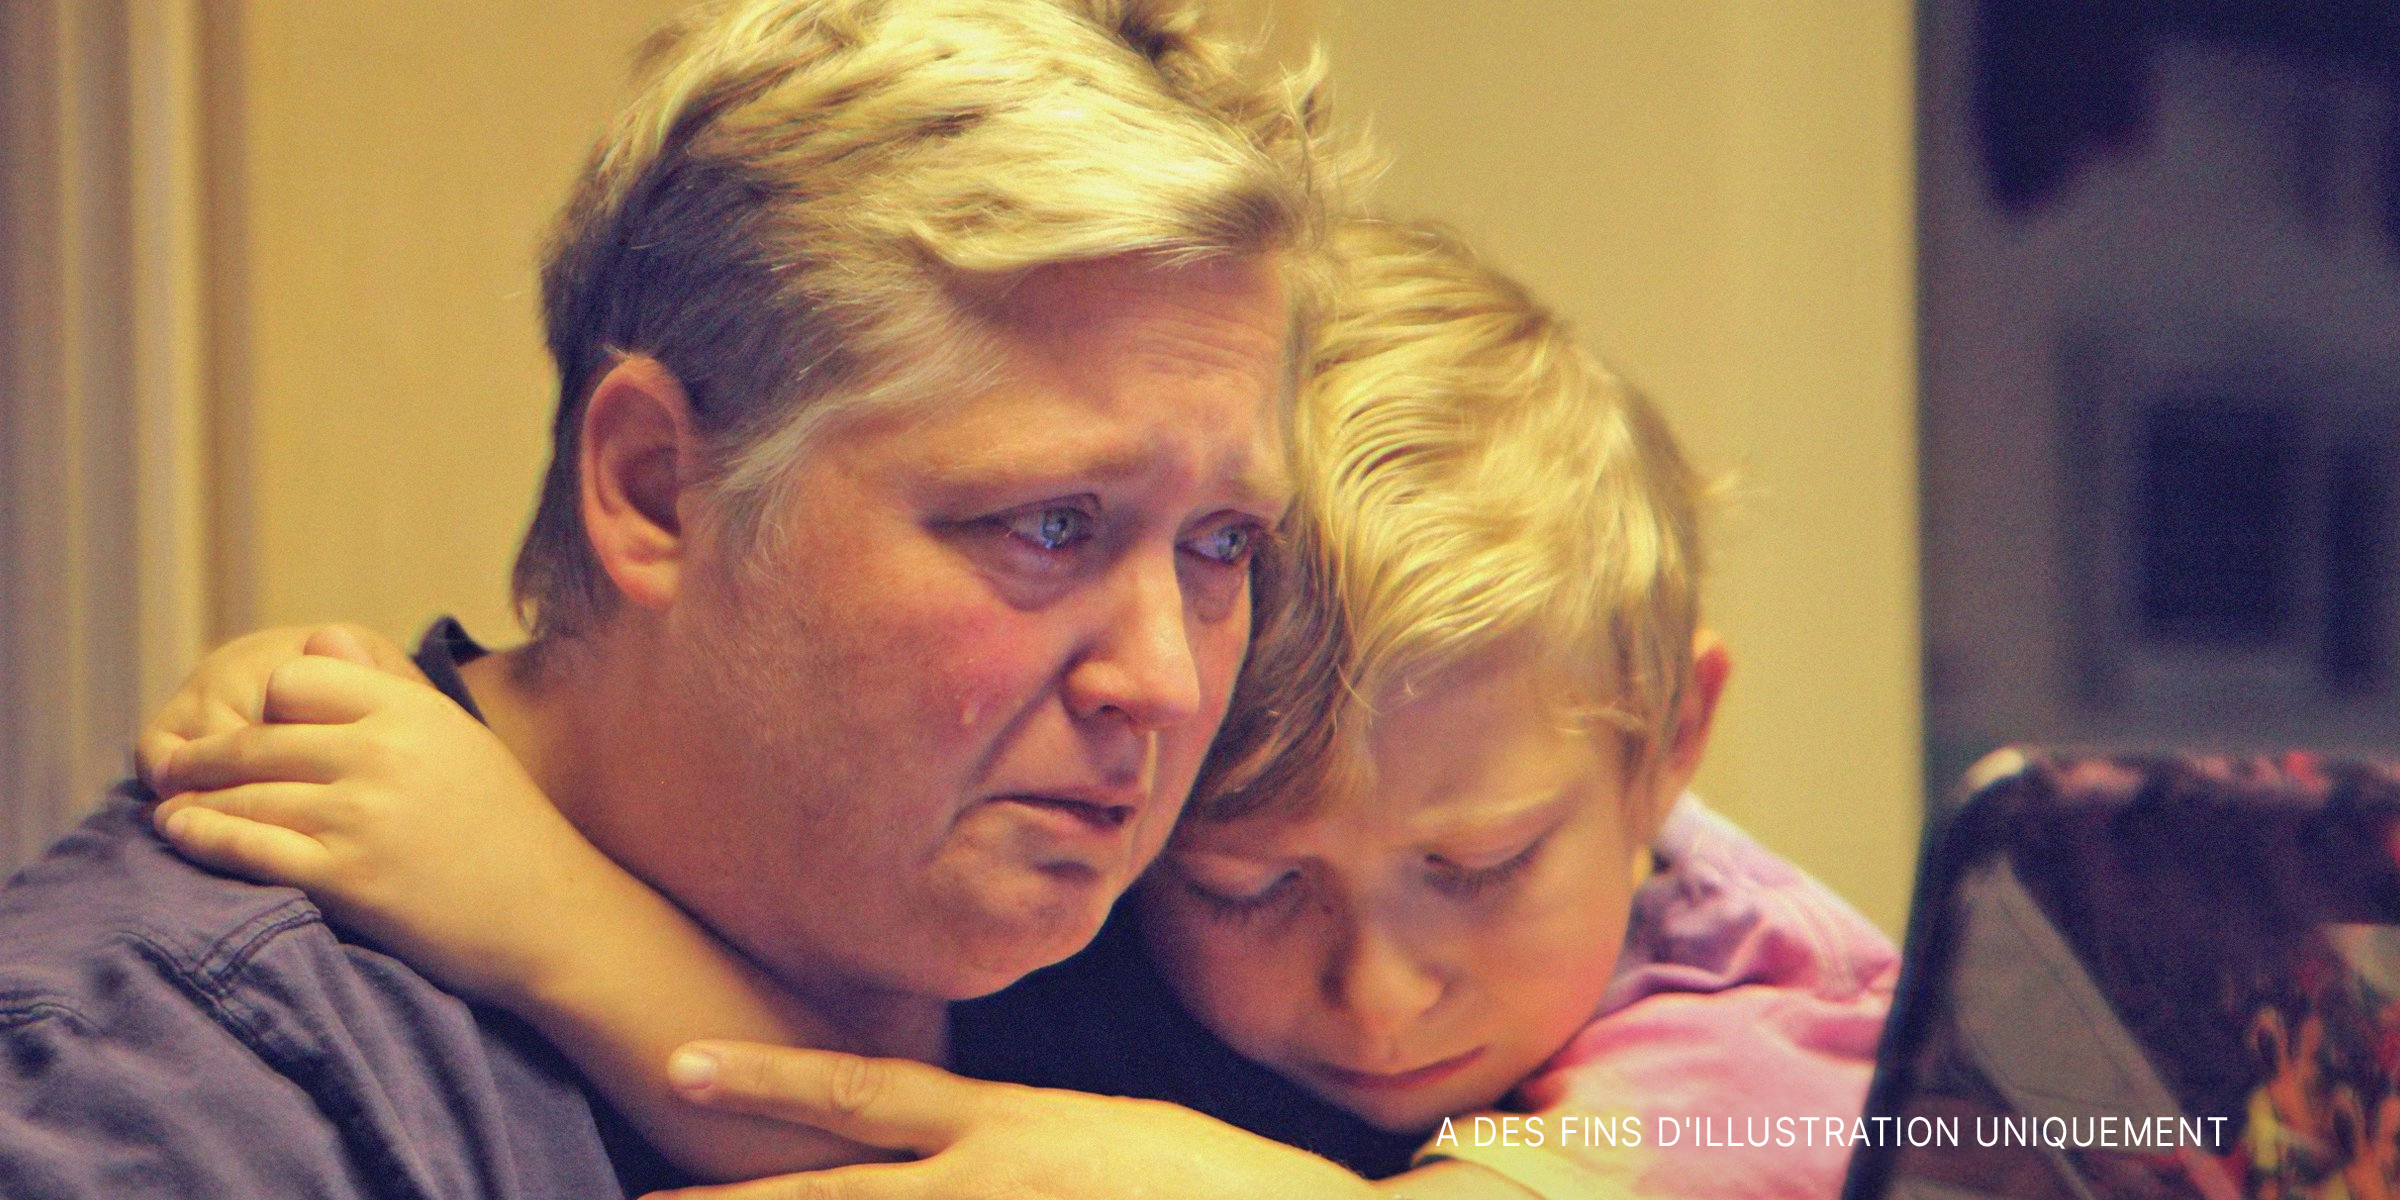 Mère et fils en train de pleurer | Source : Getty Images